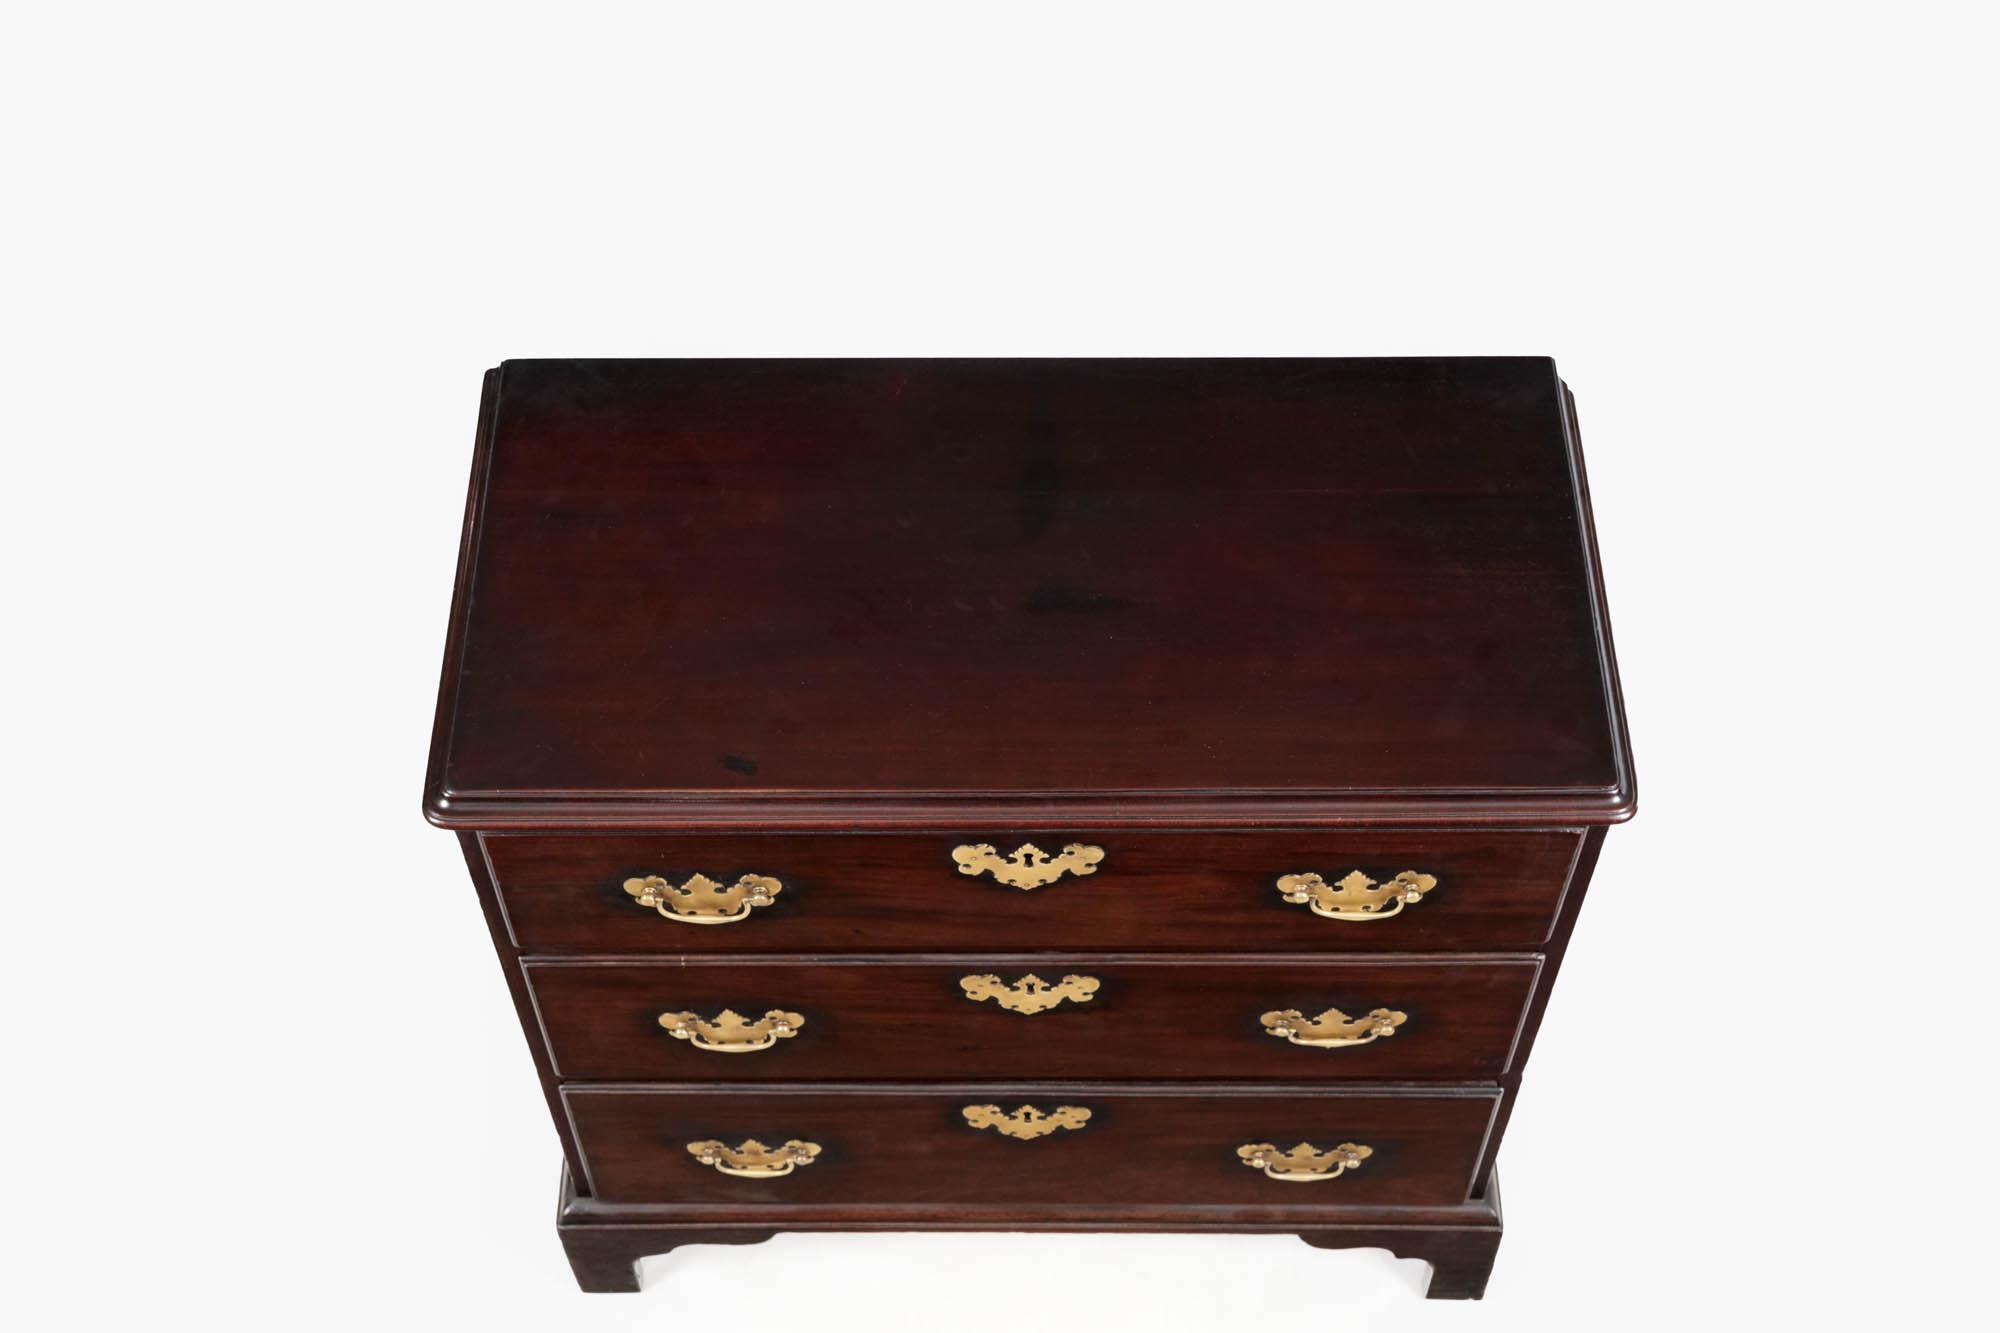 Eine sehr schöne Georg III. Junggesellenkommode mit drei Schubladen. Das Möbelstück steht auf einfachen Spitzbogenfüßen und die Schubladen sind mit Messinggriffen und -schildern ausgestattet.